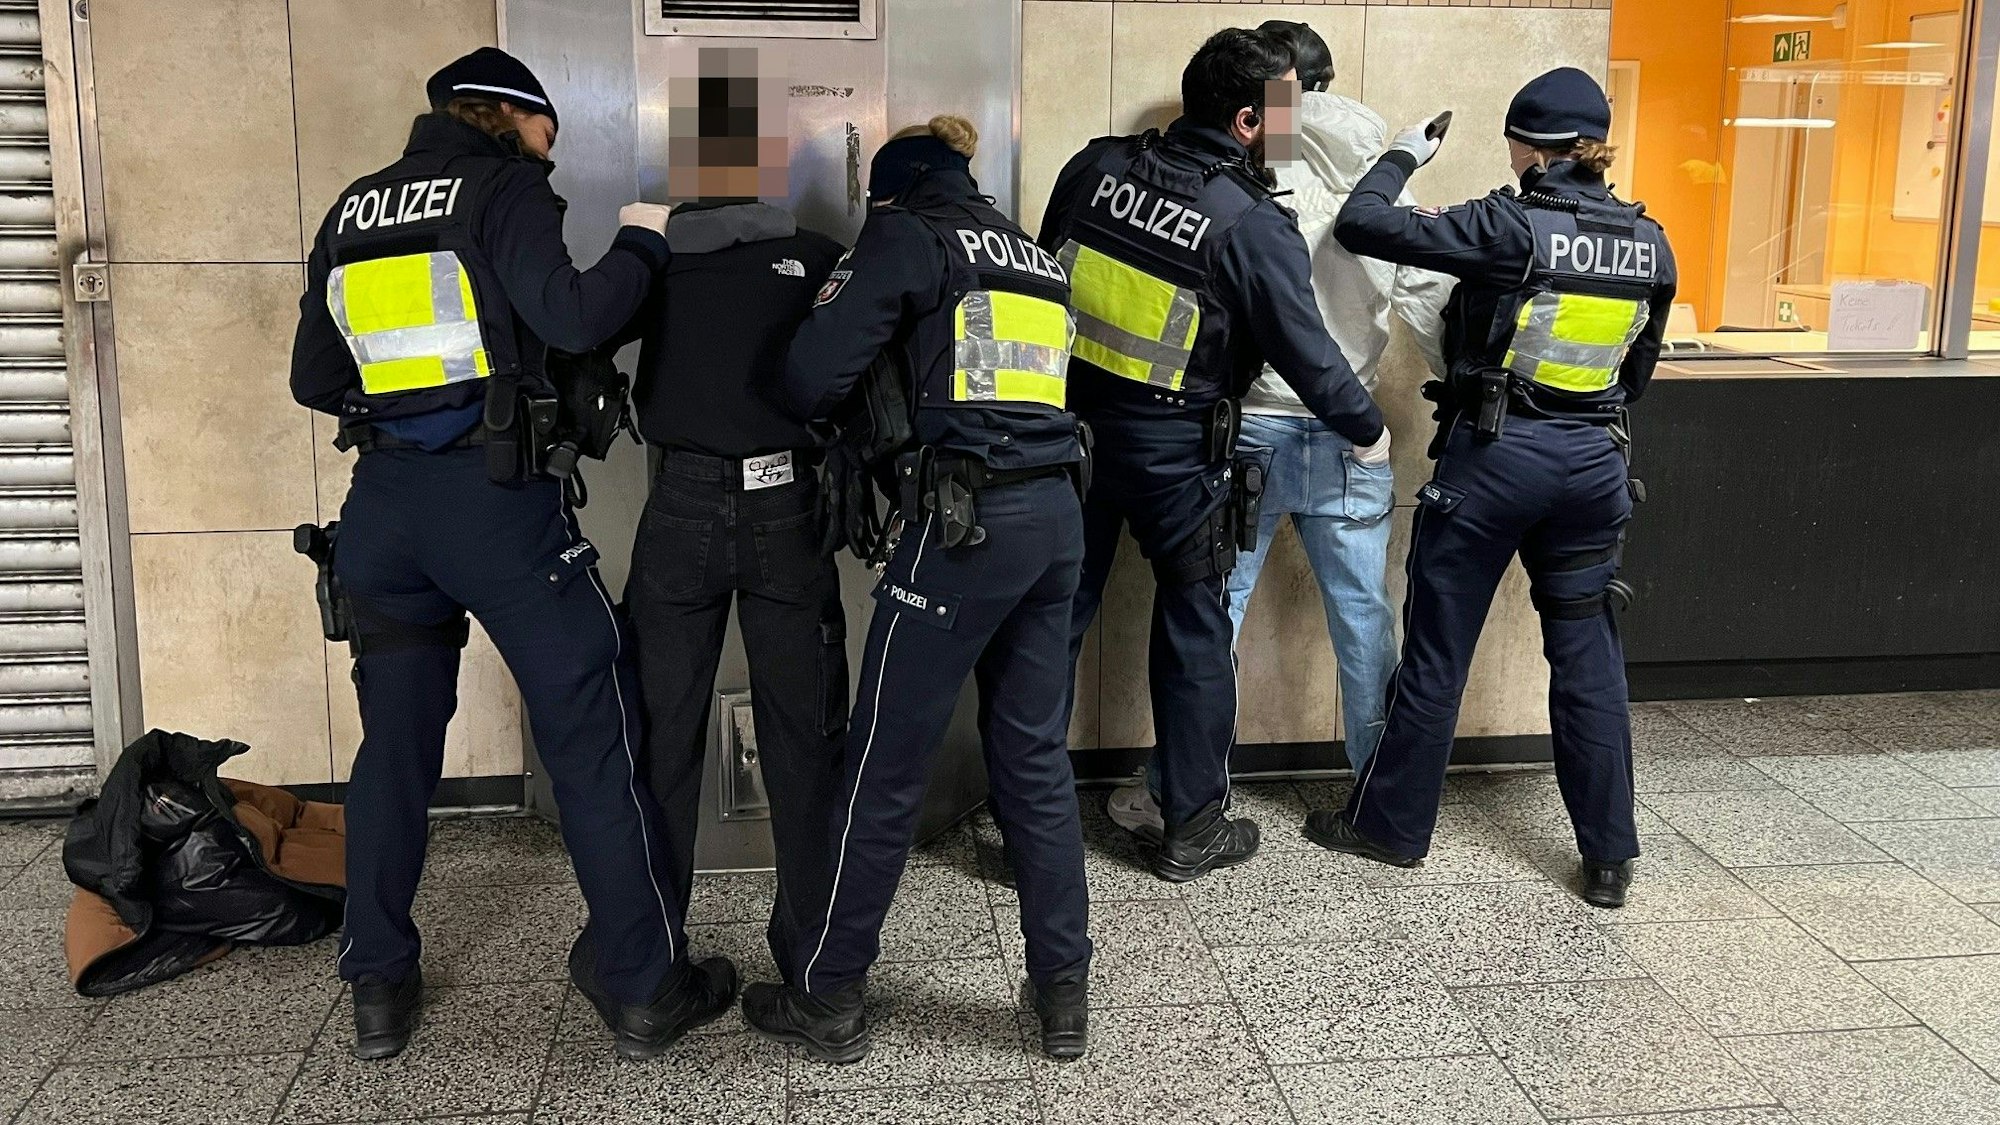 Polizistinnen und Polizisten durchsuchen in der KVB-Zwischenebene am Ebertplatz zwei mutmaßliche Drogendealer.